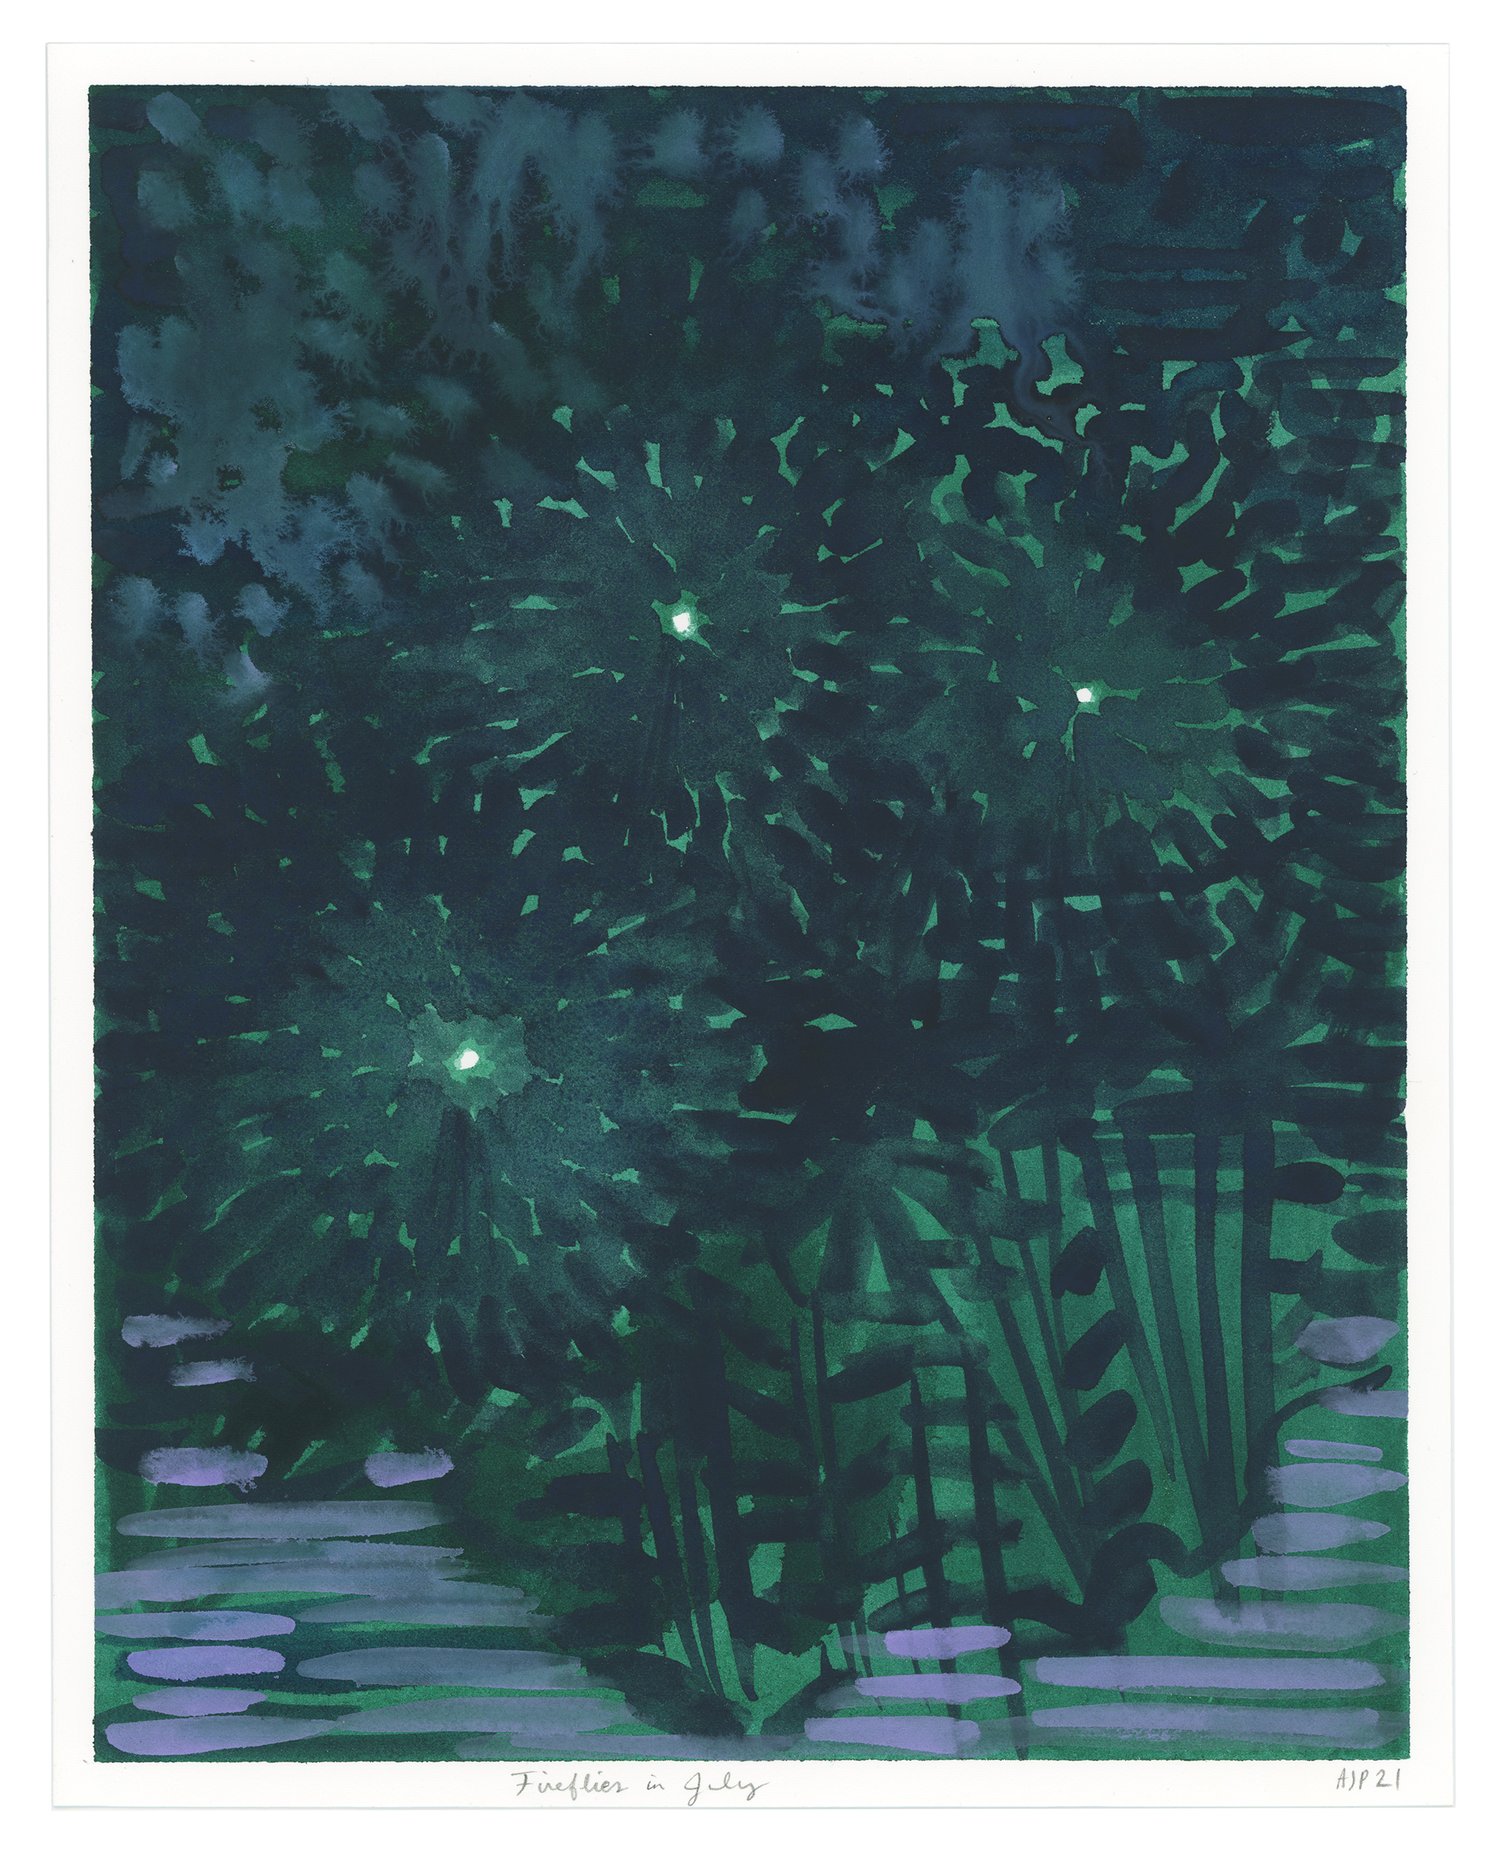 Fireflies in July